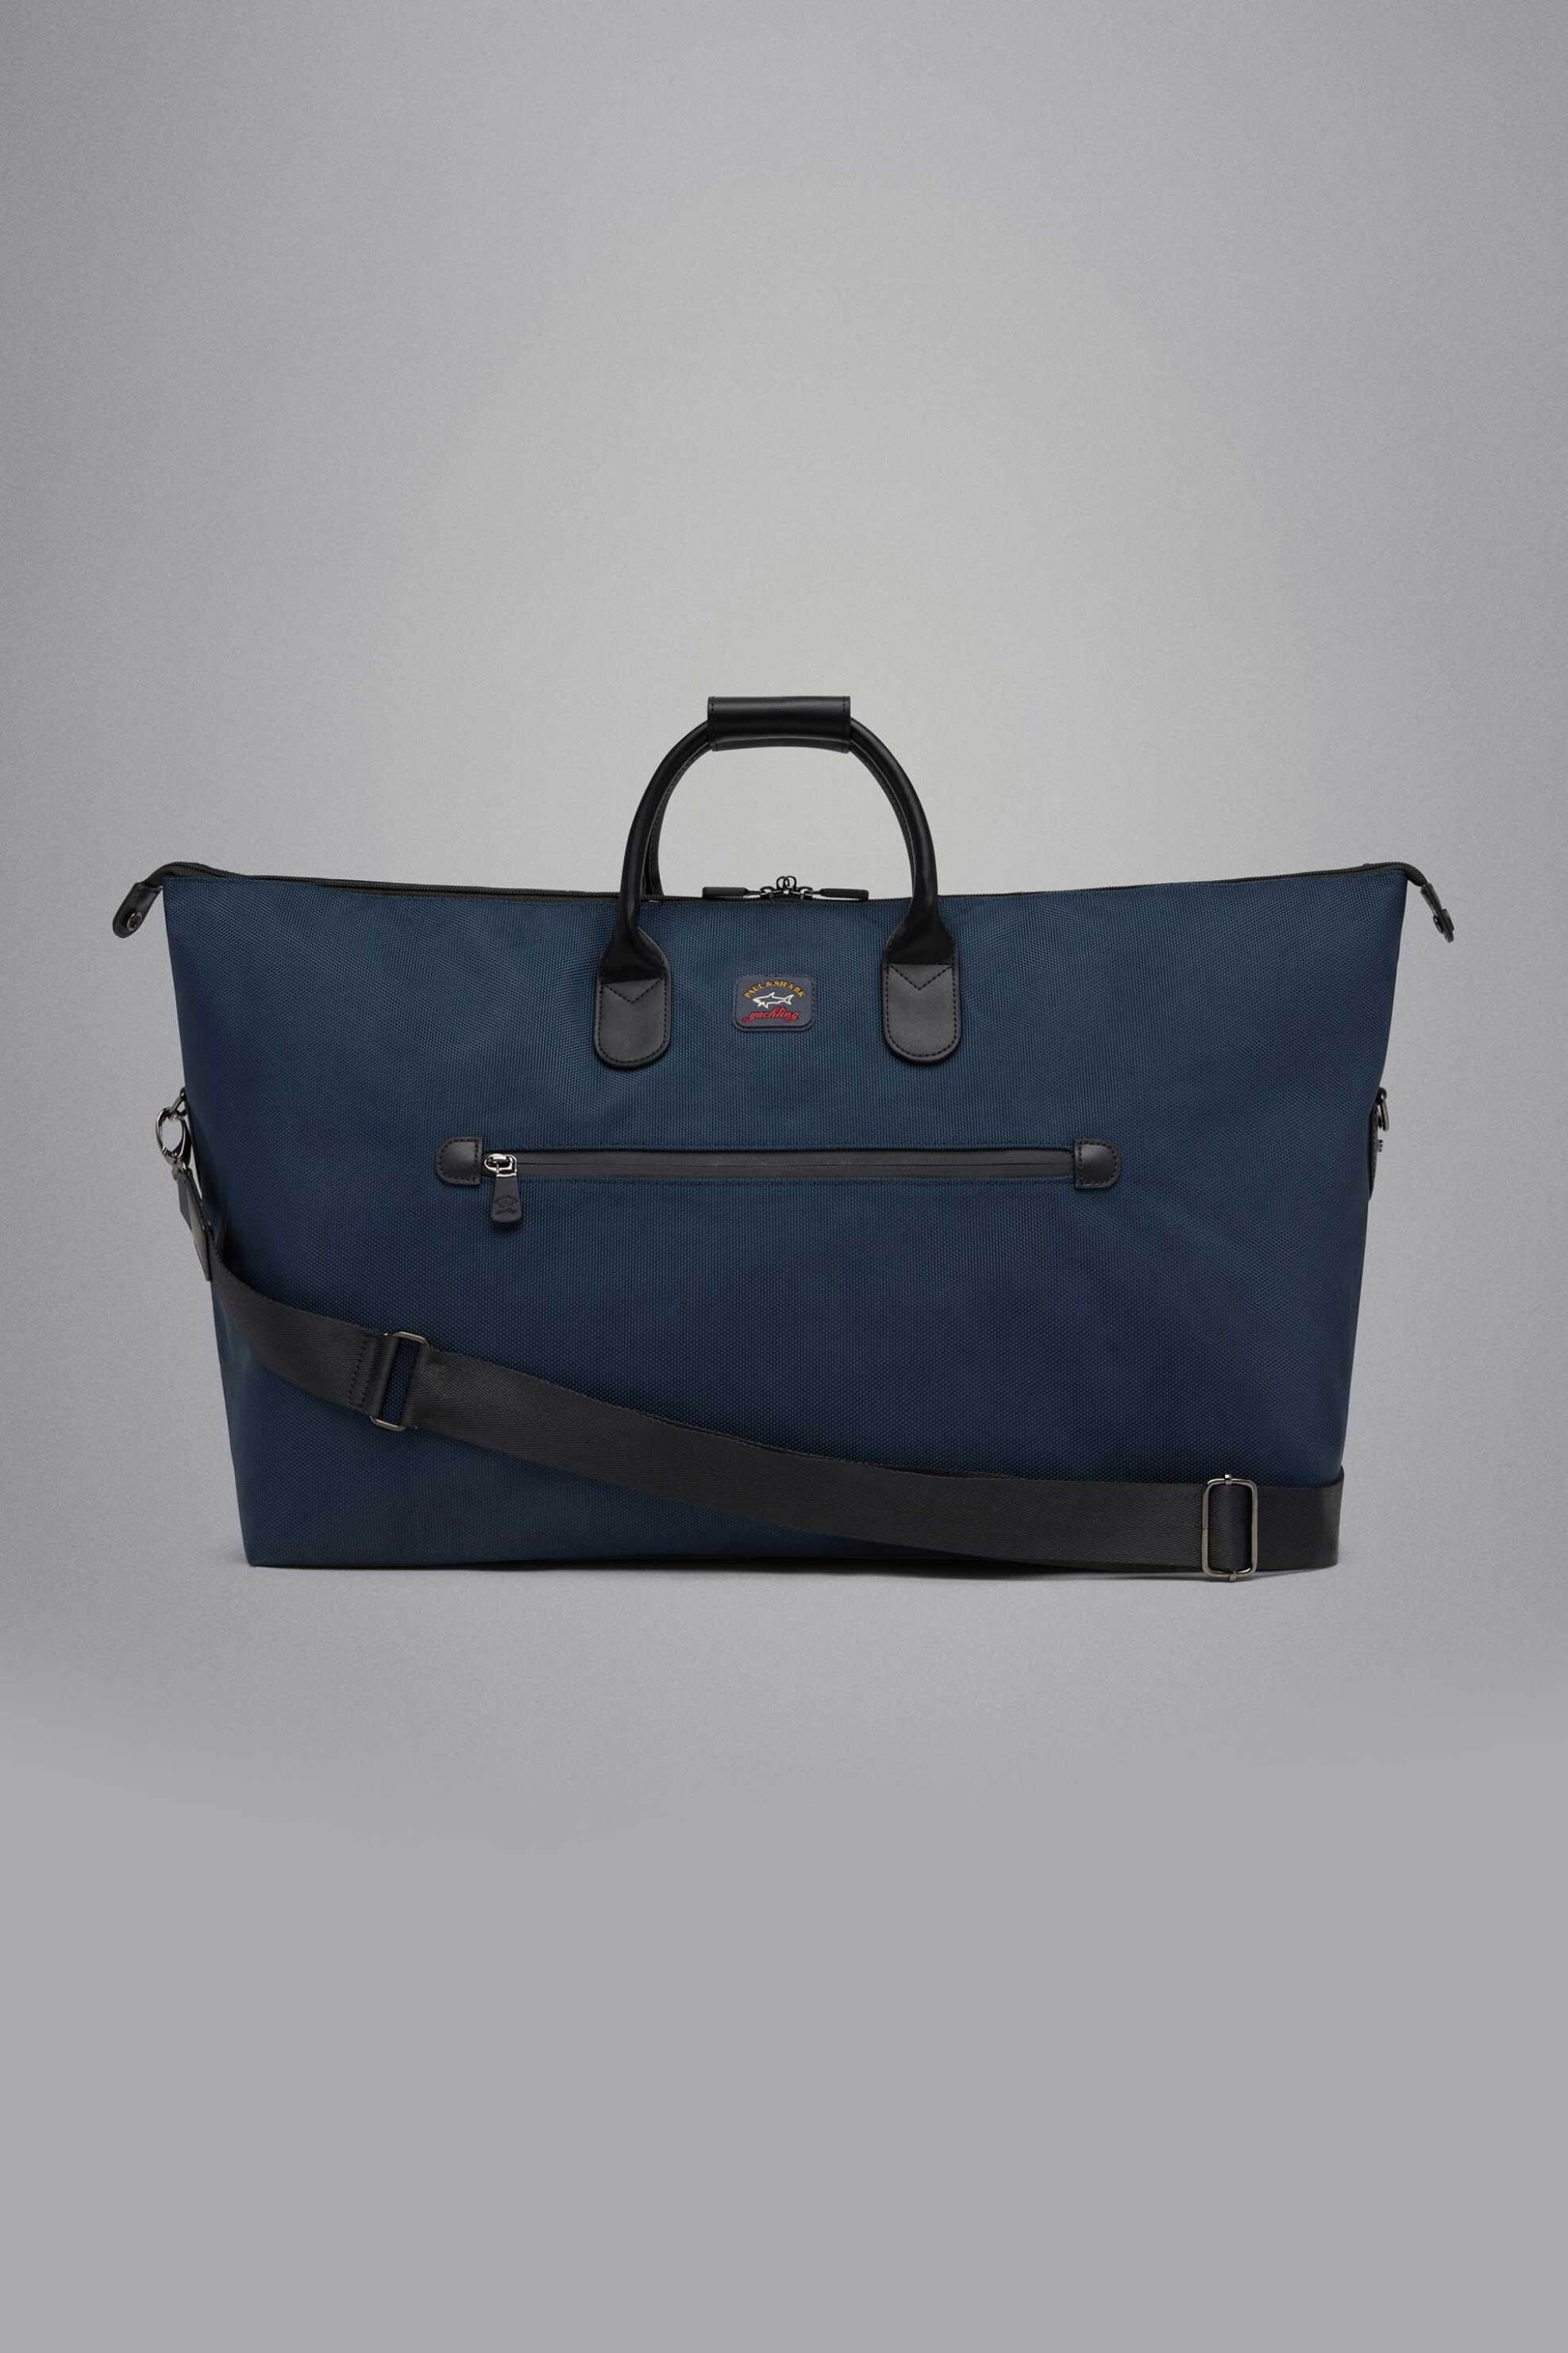 Άνδρας > ΤΣΑΝΤΕΣ > Τσάντες Χειρός & Laptop Paul&Shark ανδρική τσάντα χειρός με logo patch - 11318117 Σκούρο Μπλε